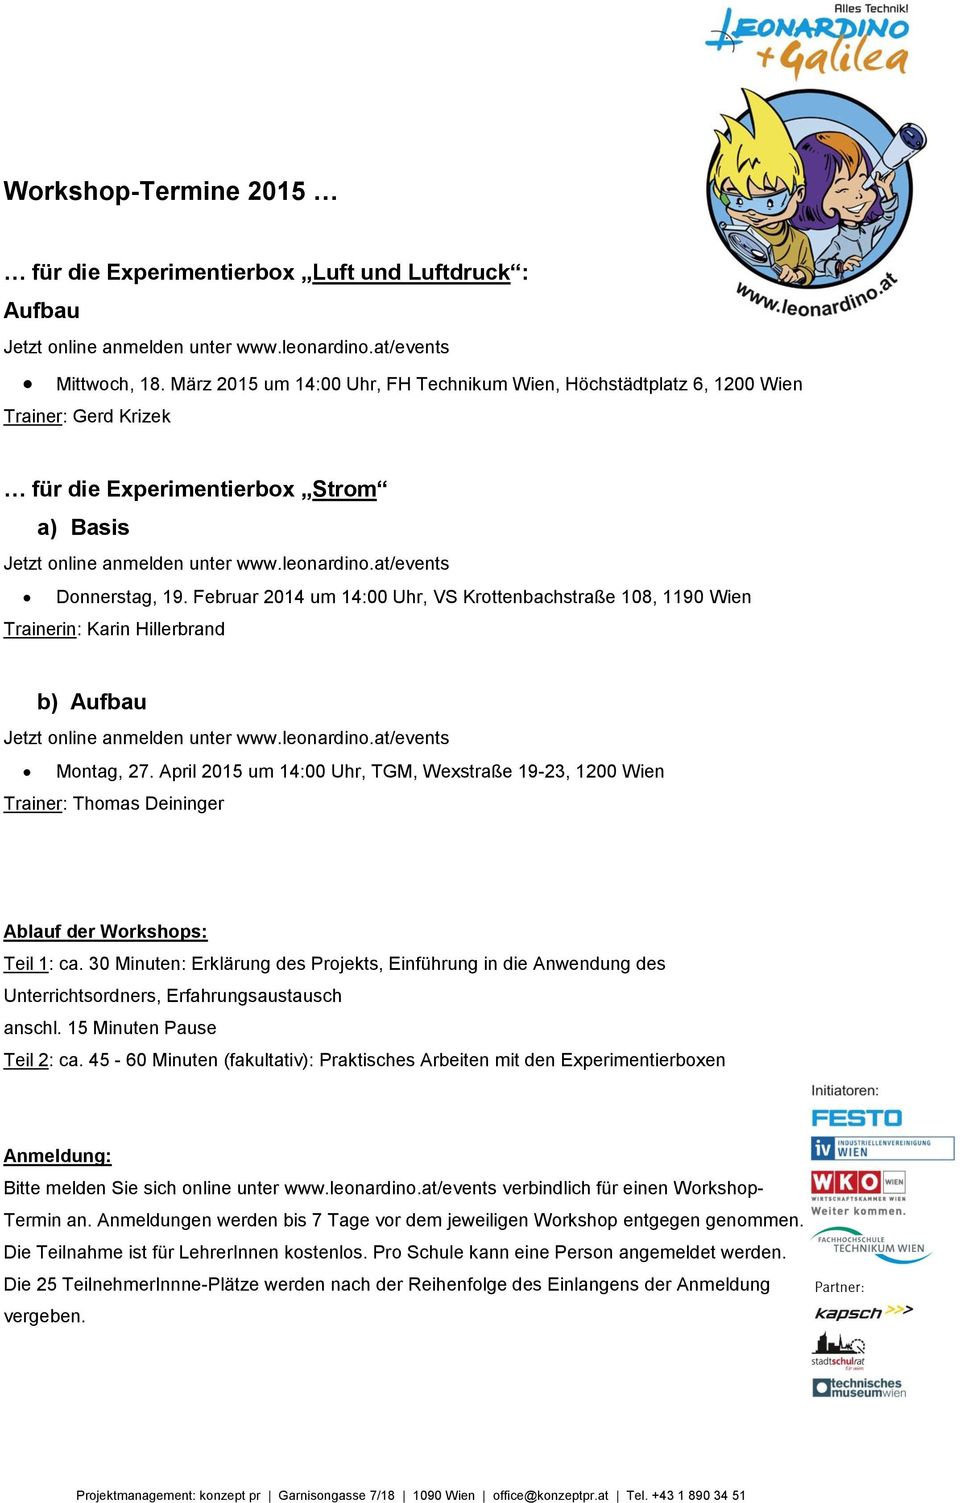 Februar 2014 um 14:00 Uhr, VS Krottenbachstraße 108, 1190 Wien Trainerin: Karin Hillerbrand b) Aufbau Jetzt online anmelden unter www.leonardino.at/events Montag, 27.